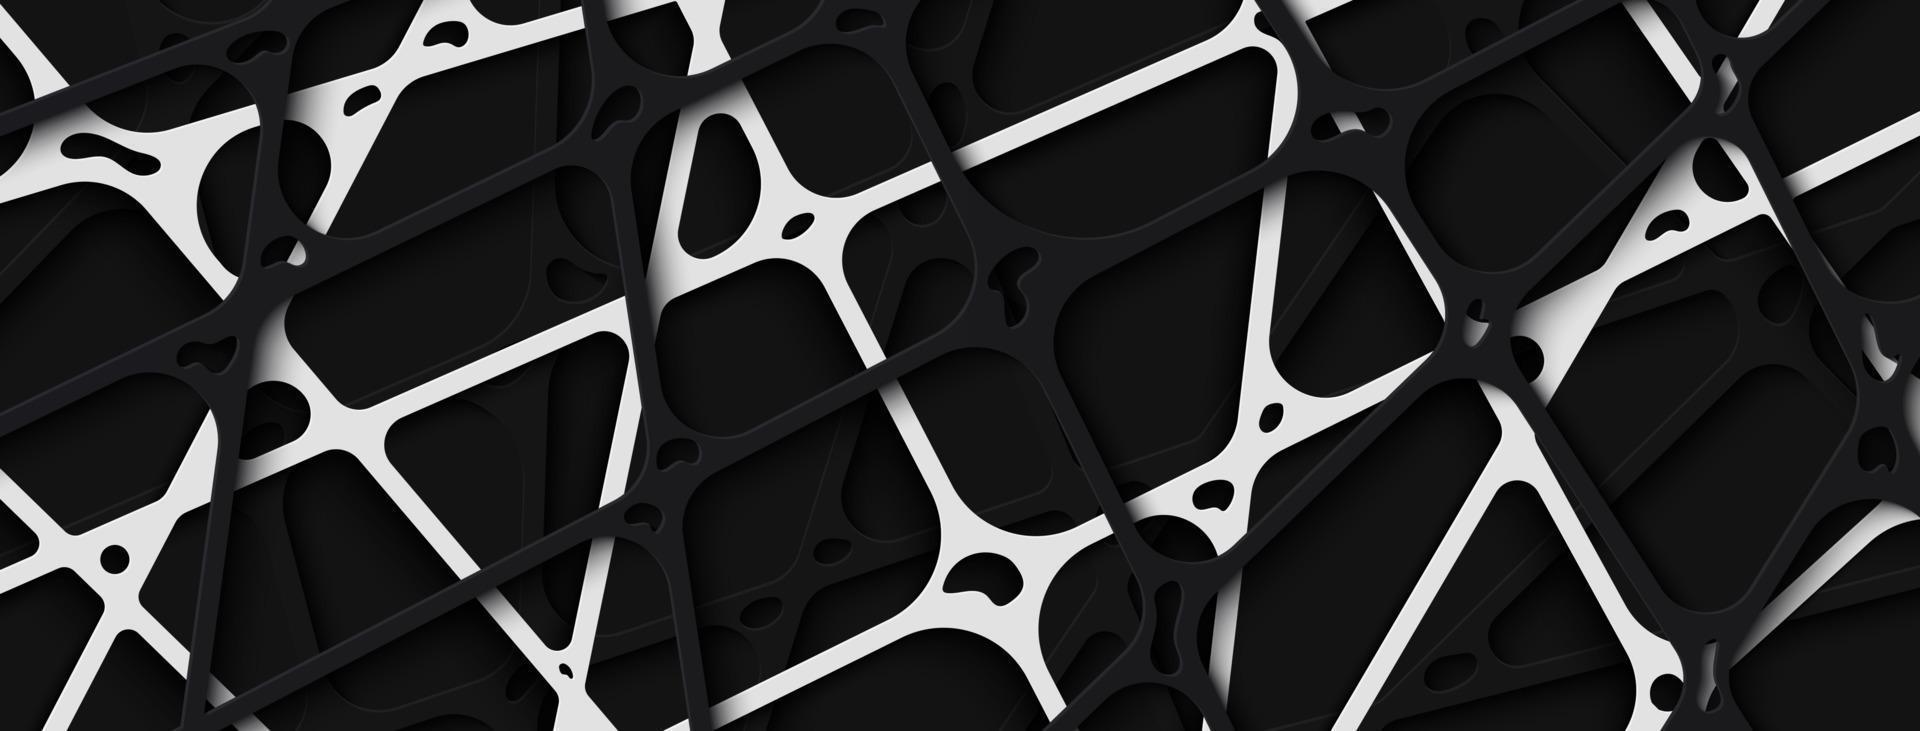 abstrakt svartvitt papercut ränder banner bakgrund vektor